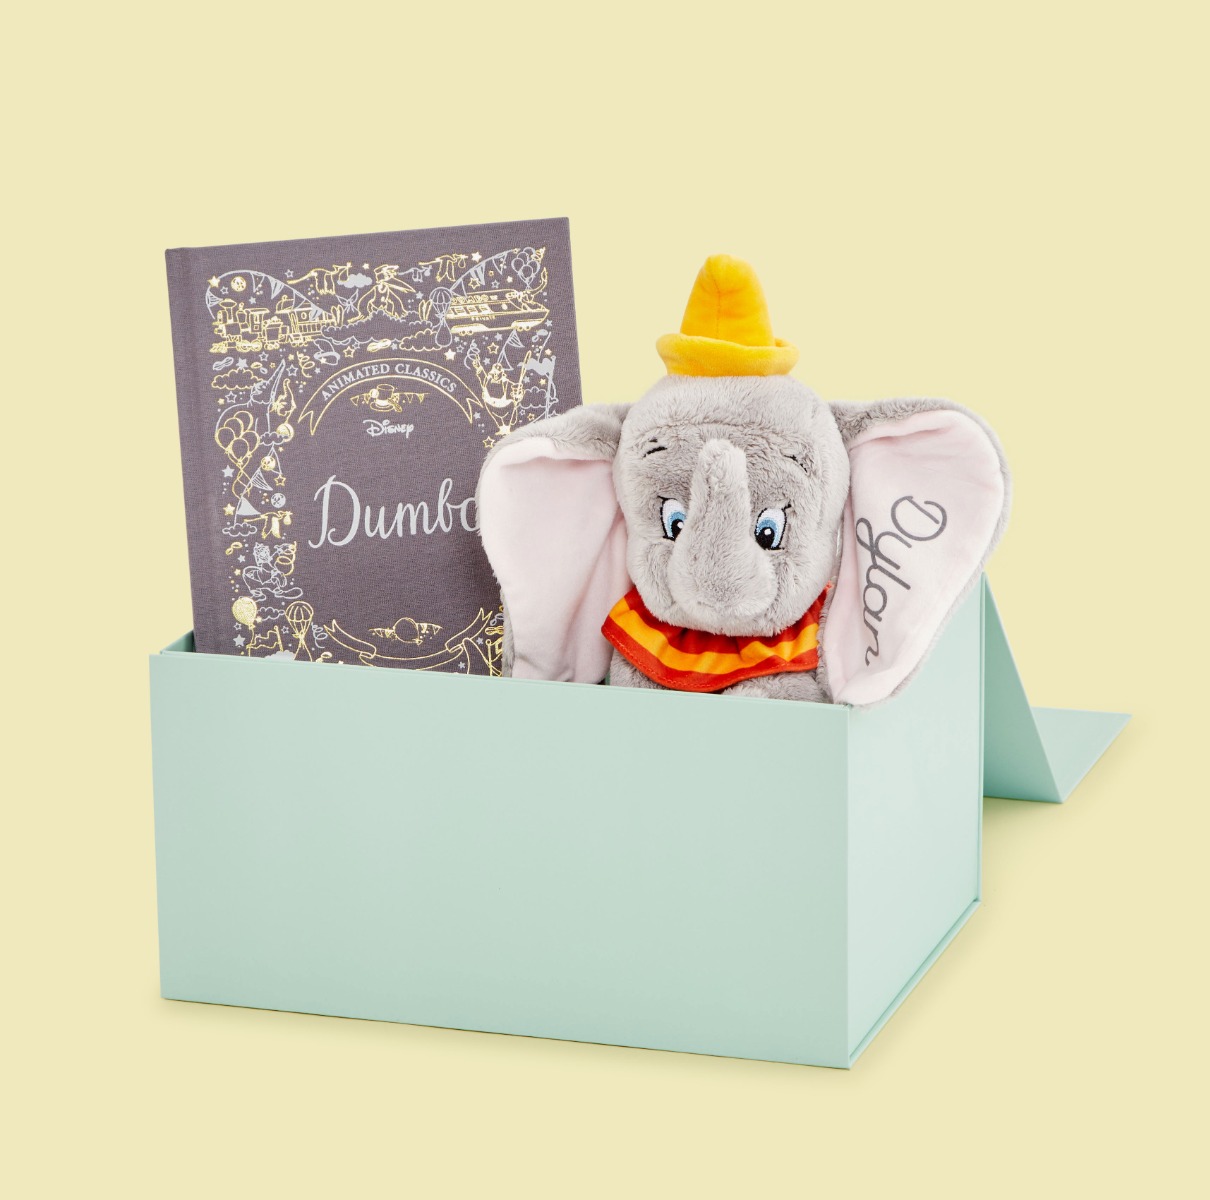 Personalised Disney’s Dumbo Bedtime Story Gift Set